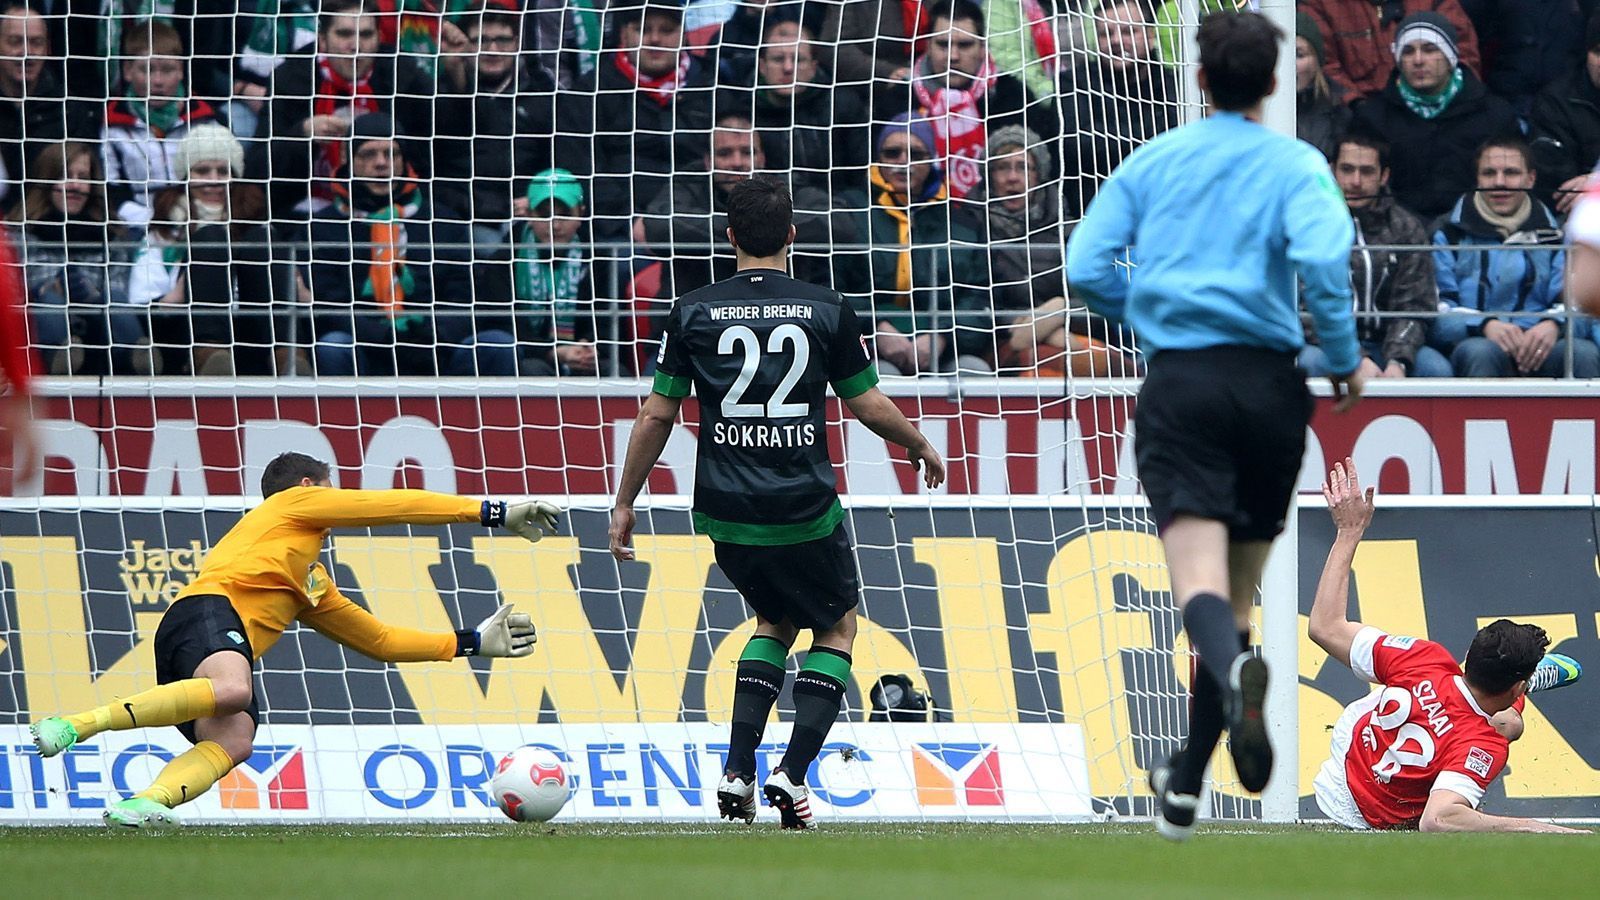 
                <strong>Platz 6: Adam Szalai (Mainz 05)</strong><br>
                Am 30. März 2013 schießt Adam Szalai nach 12 Sekunden die Führung gegen Werder Bremen - das bringt dem Stürmer im Ranking Platz sechs.
              